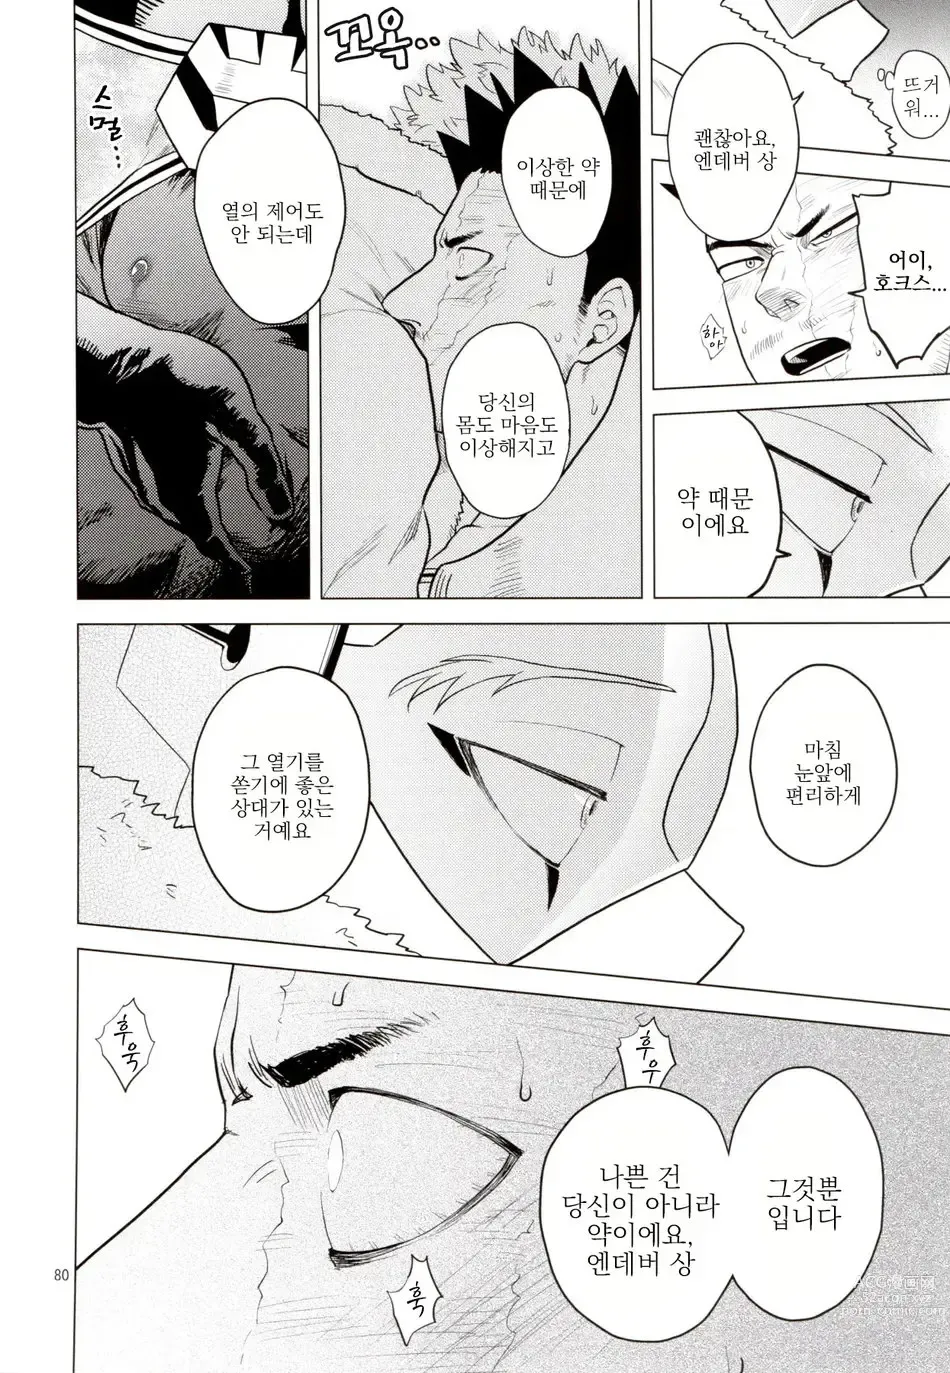 Page 79 of doujinshi Enholog #01